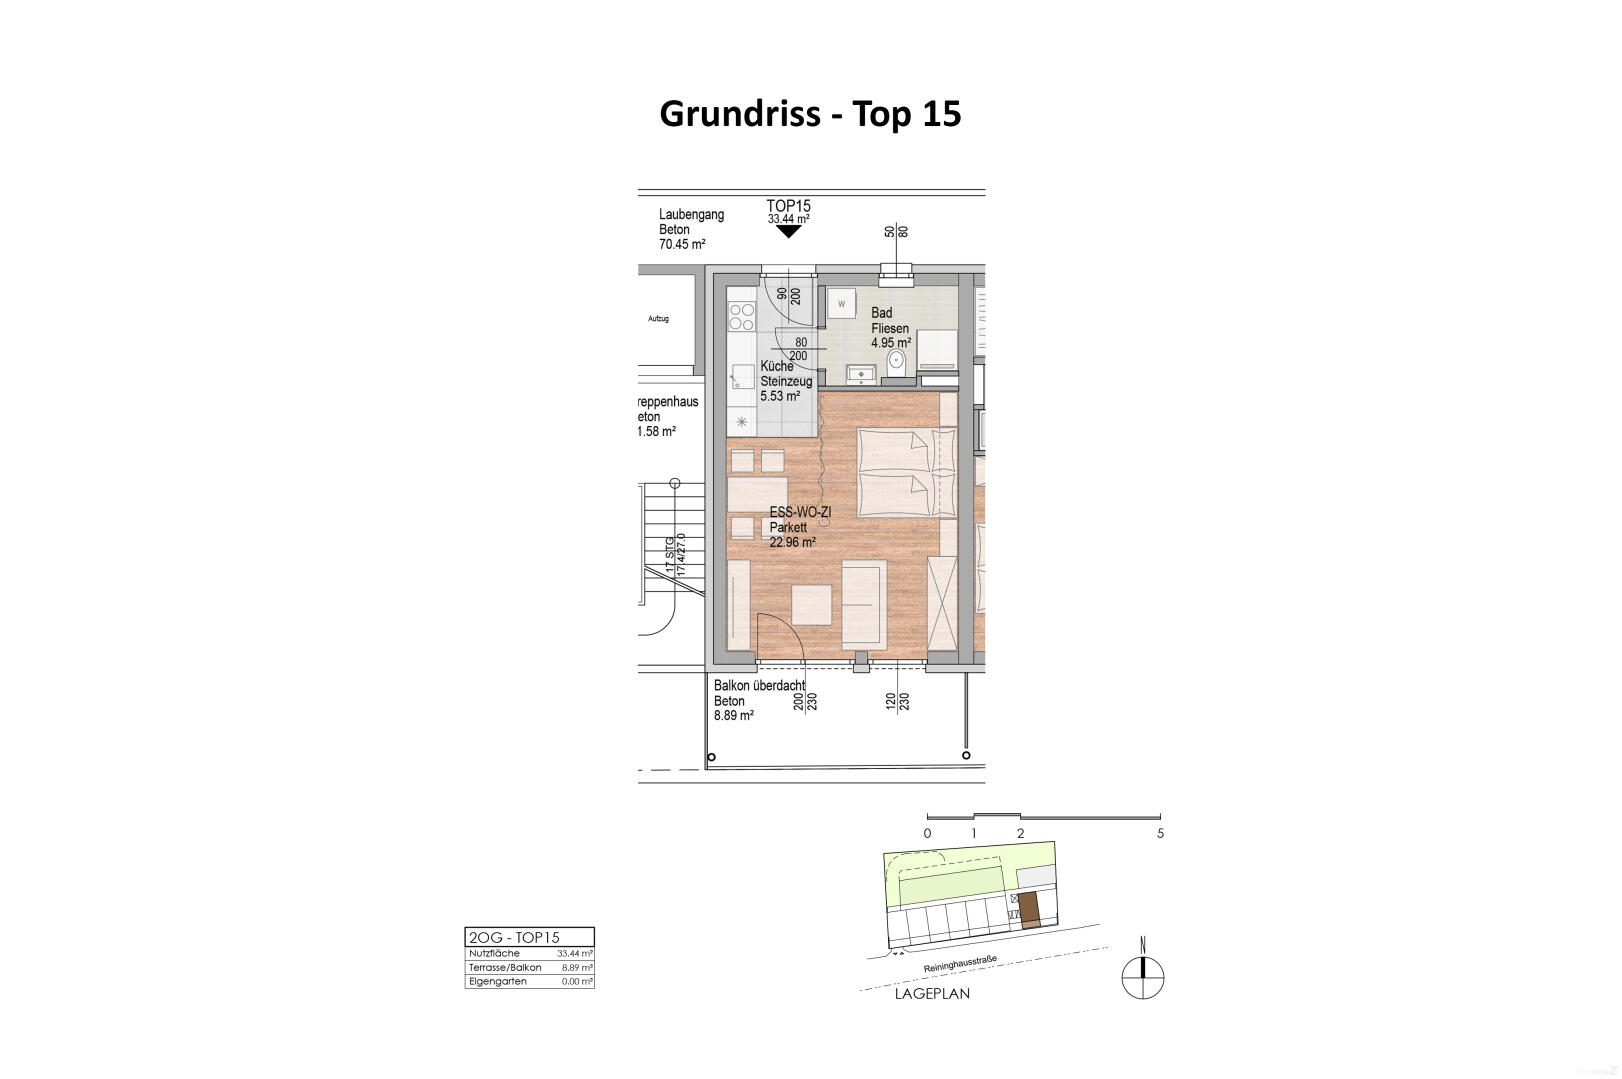 Wohnung zu mieten: Reininghausstraße 56, 8020 Graz - Grundriss Top 15